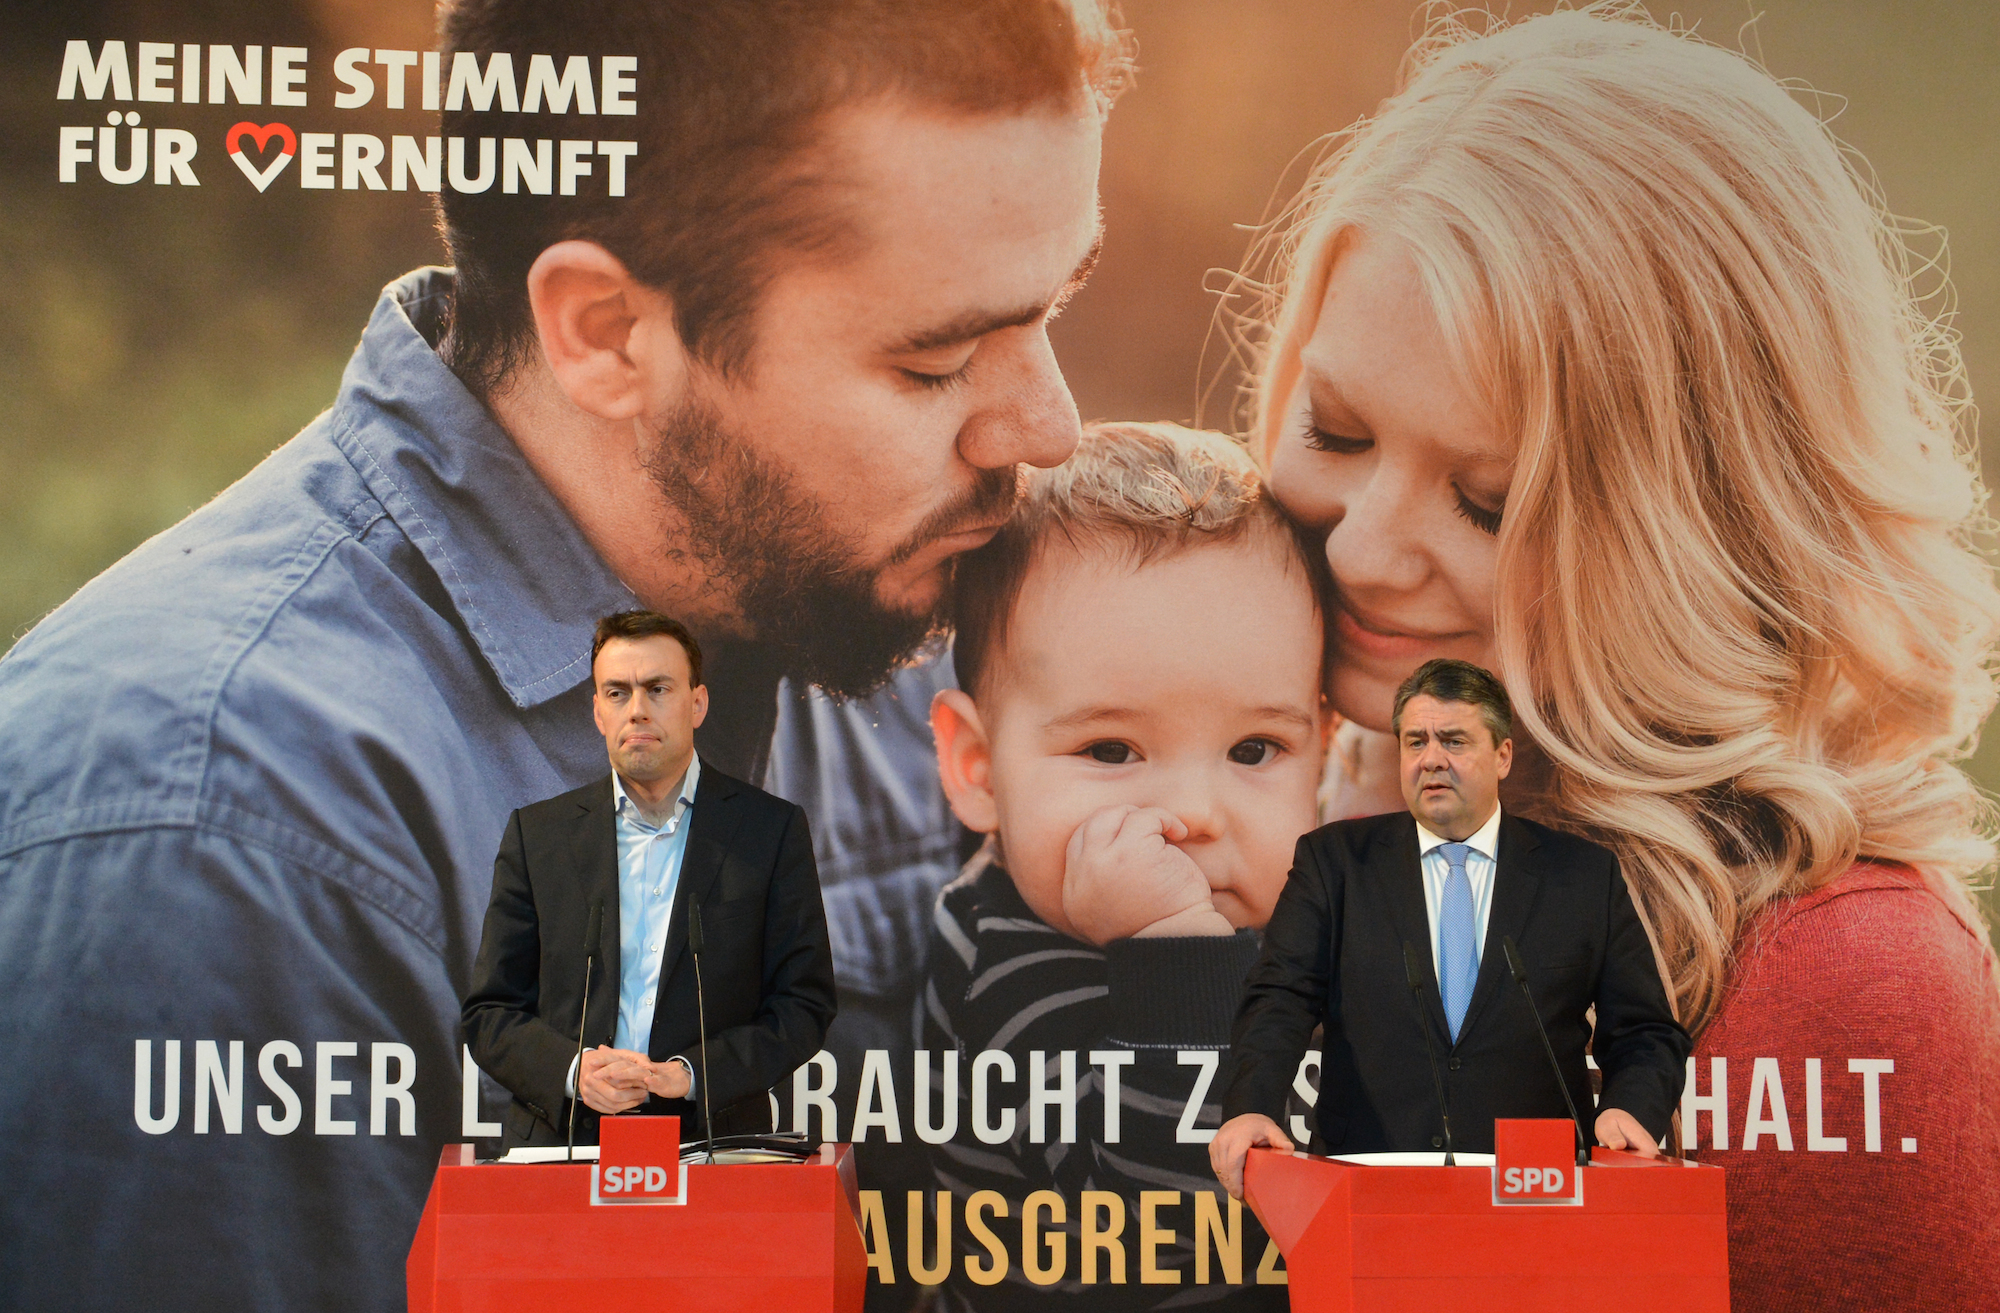 Sigmar gabriel (r) und Nils Schmid stellen die Kampagne "Meine Stimme für Vernunft" in Stuttgart vor